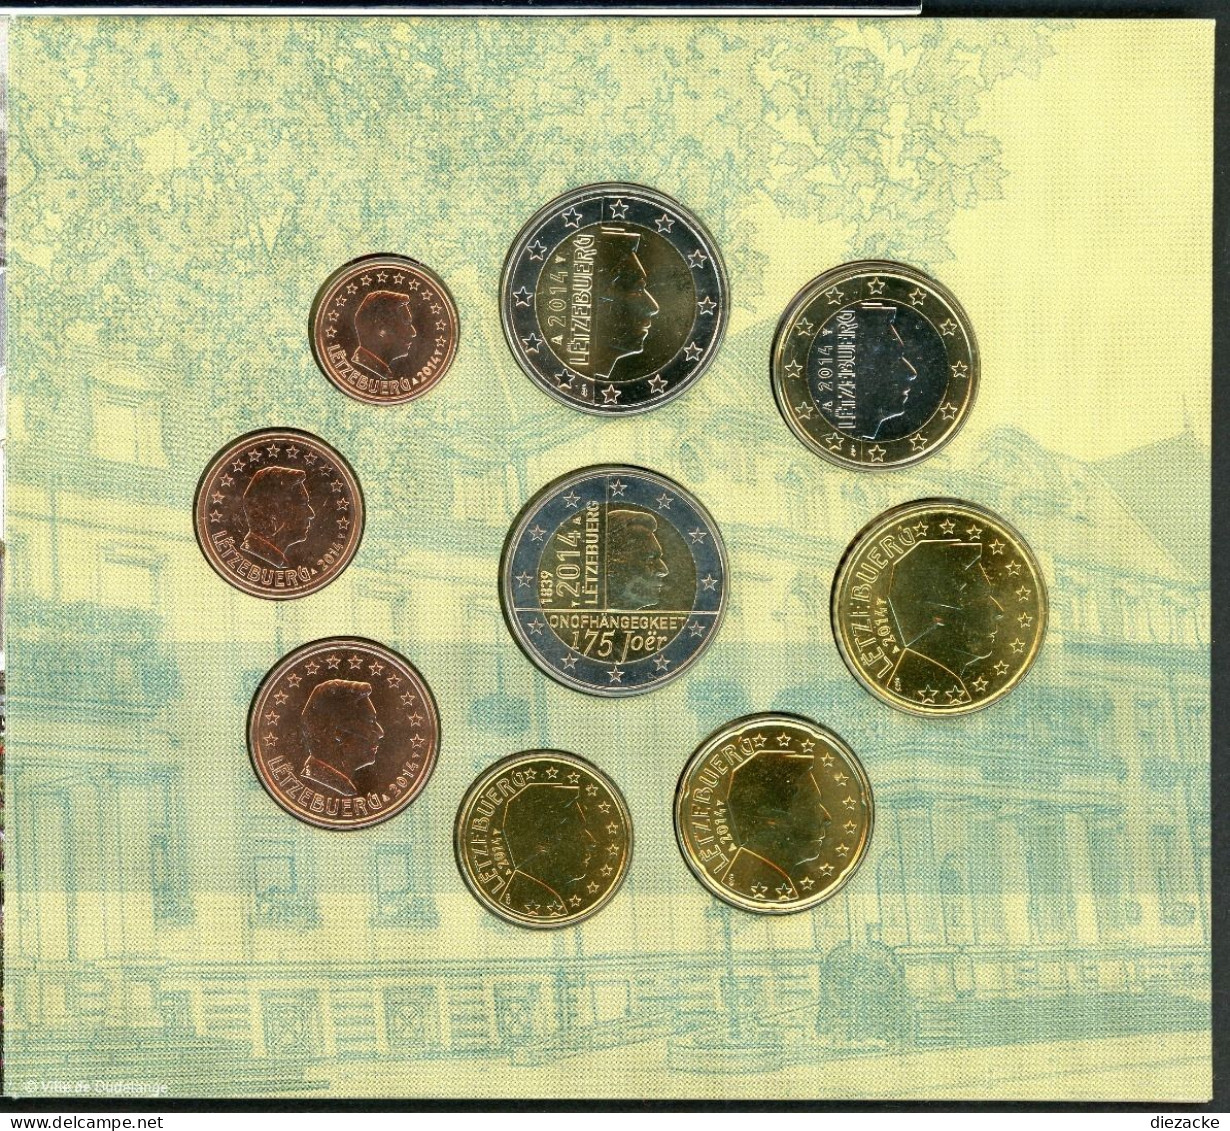 Luxemburg Kursmünzensatz/ KMS 2014 + 2 € Gedenkprägung Im Folder BU (MZ848 - Luxembourg